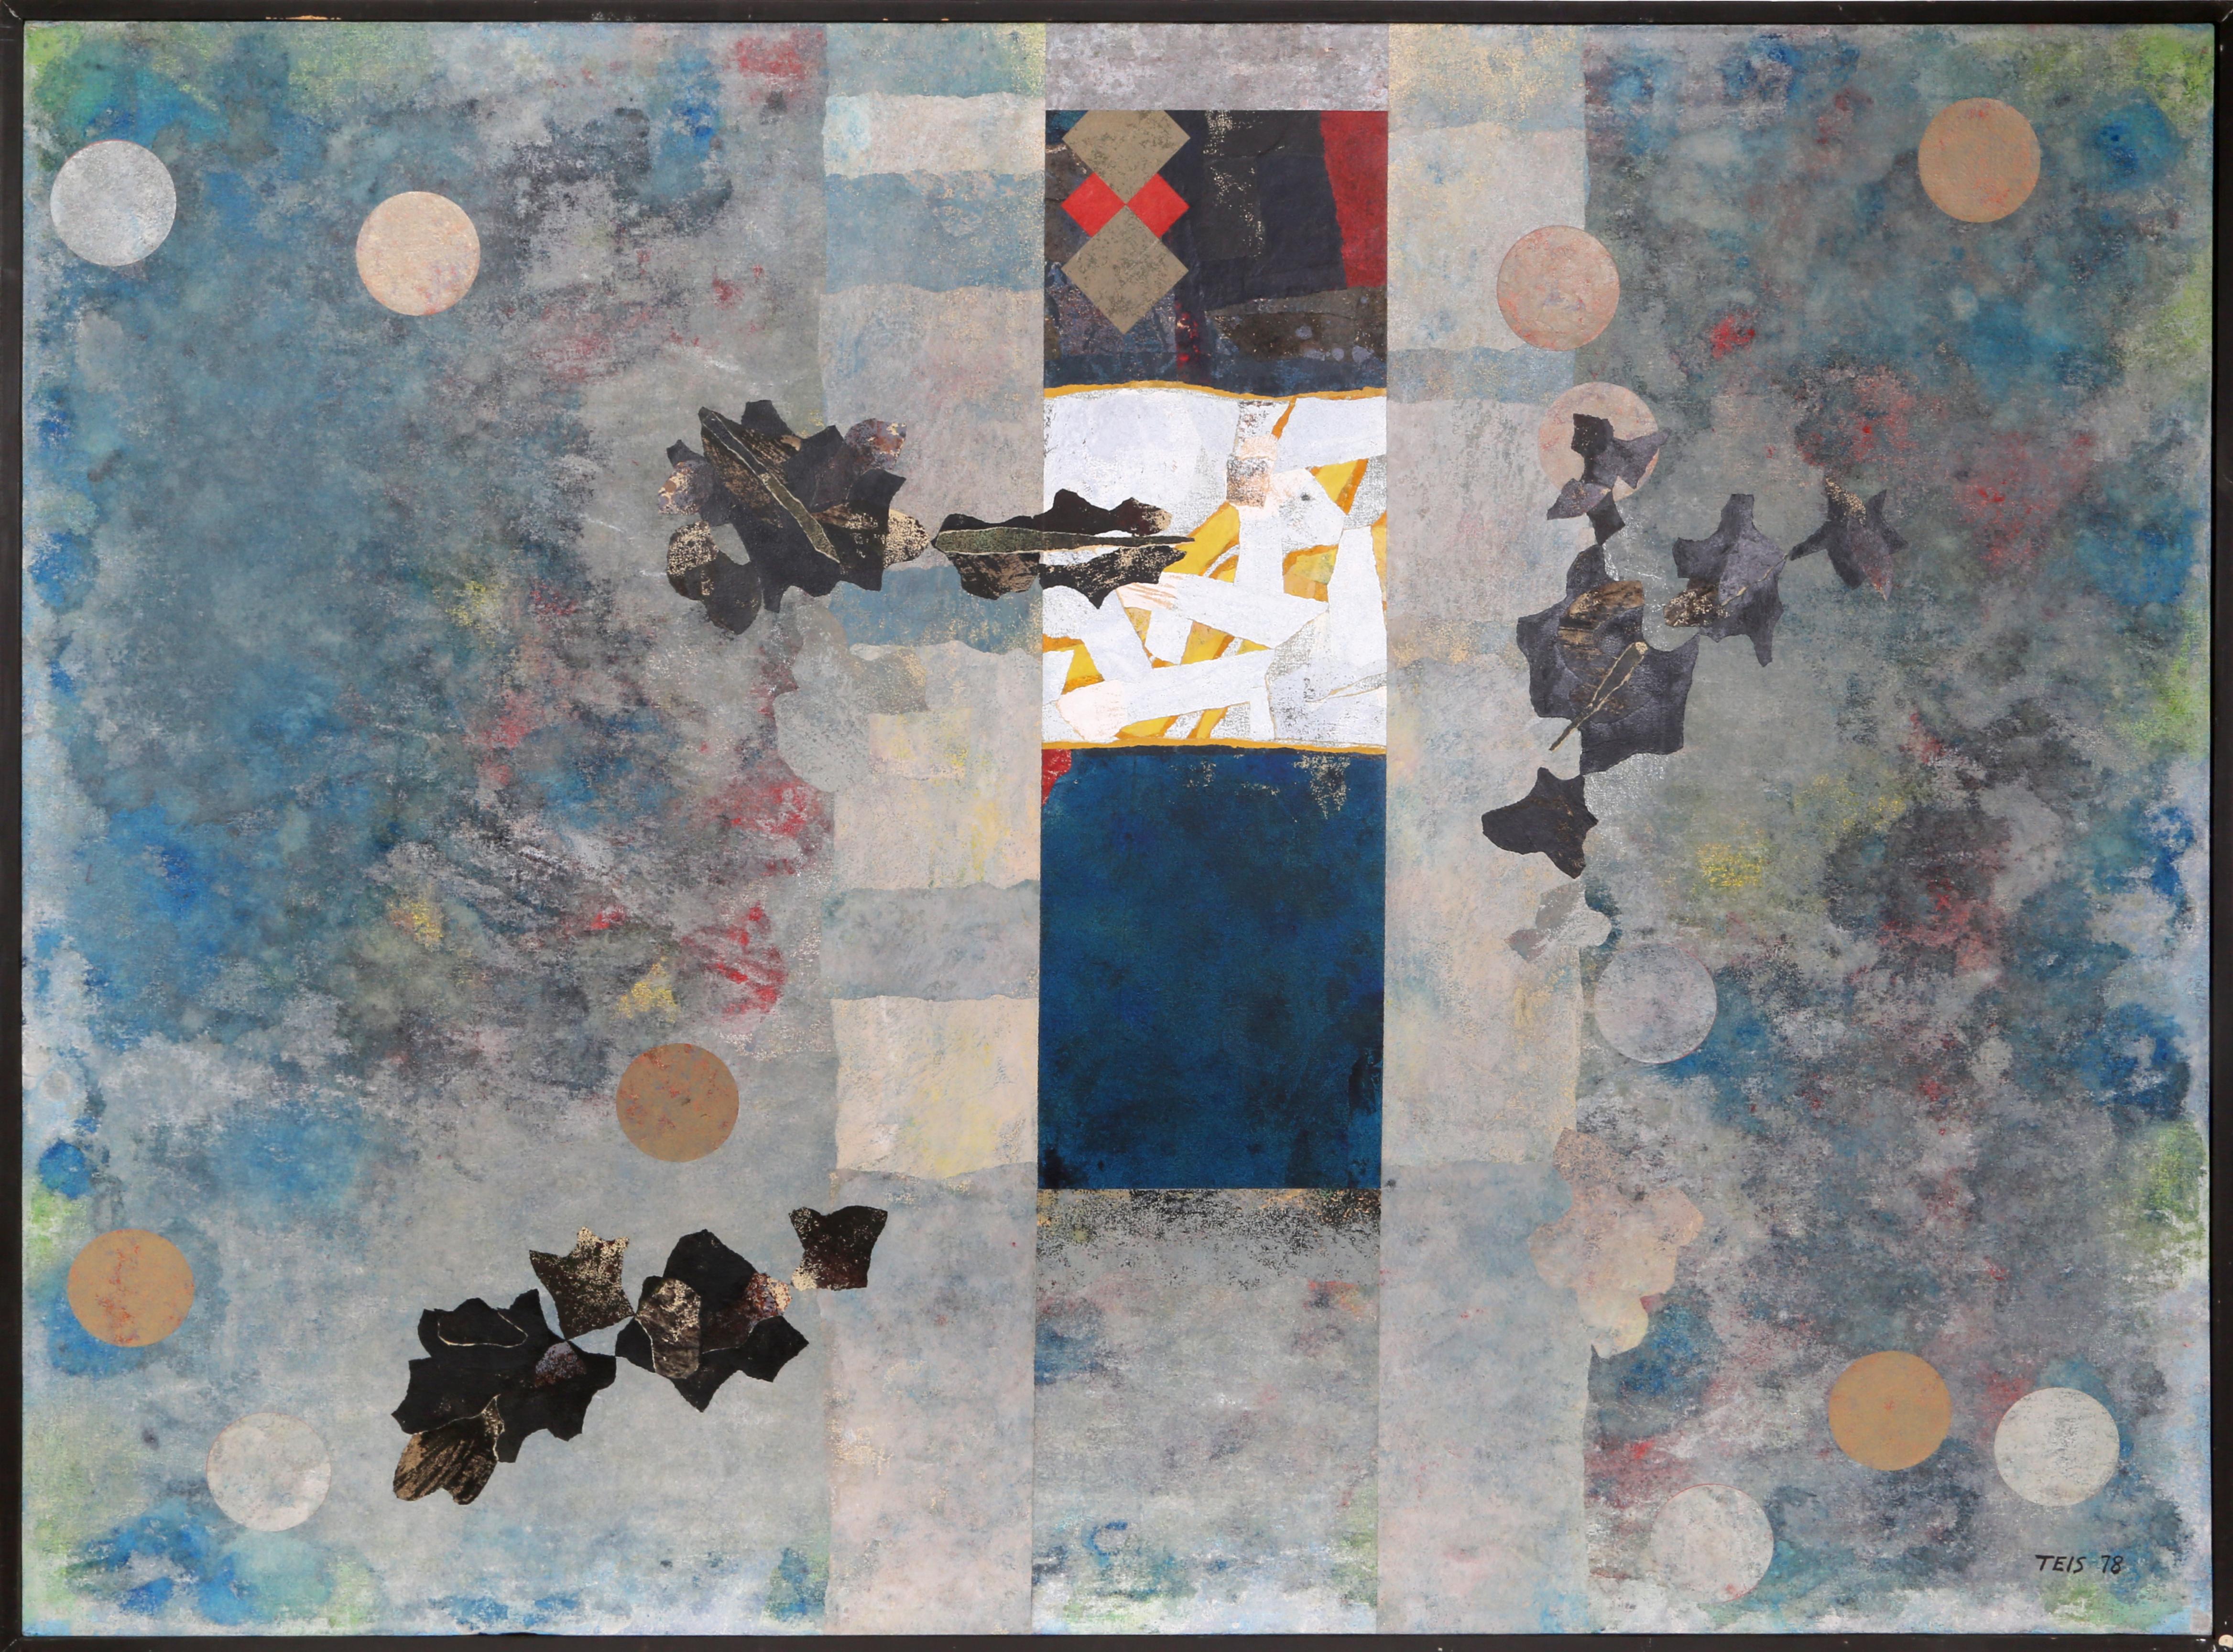 Artistics : Dan Teis, Américain (1925 - 2002)
Titre : Abstrait bleu avec feuilles
Année : 1978
Moyen d'expression : Huile sur toile, signée à gauche.
Taille : 54 x 72 in. (137.16 x 182.88 cm)